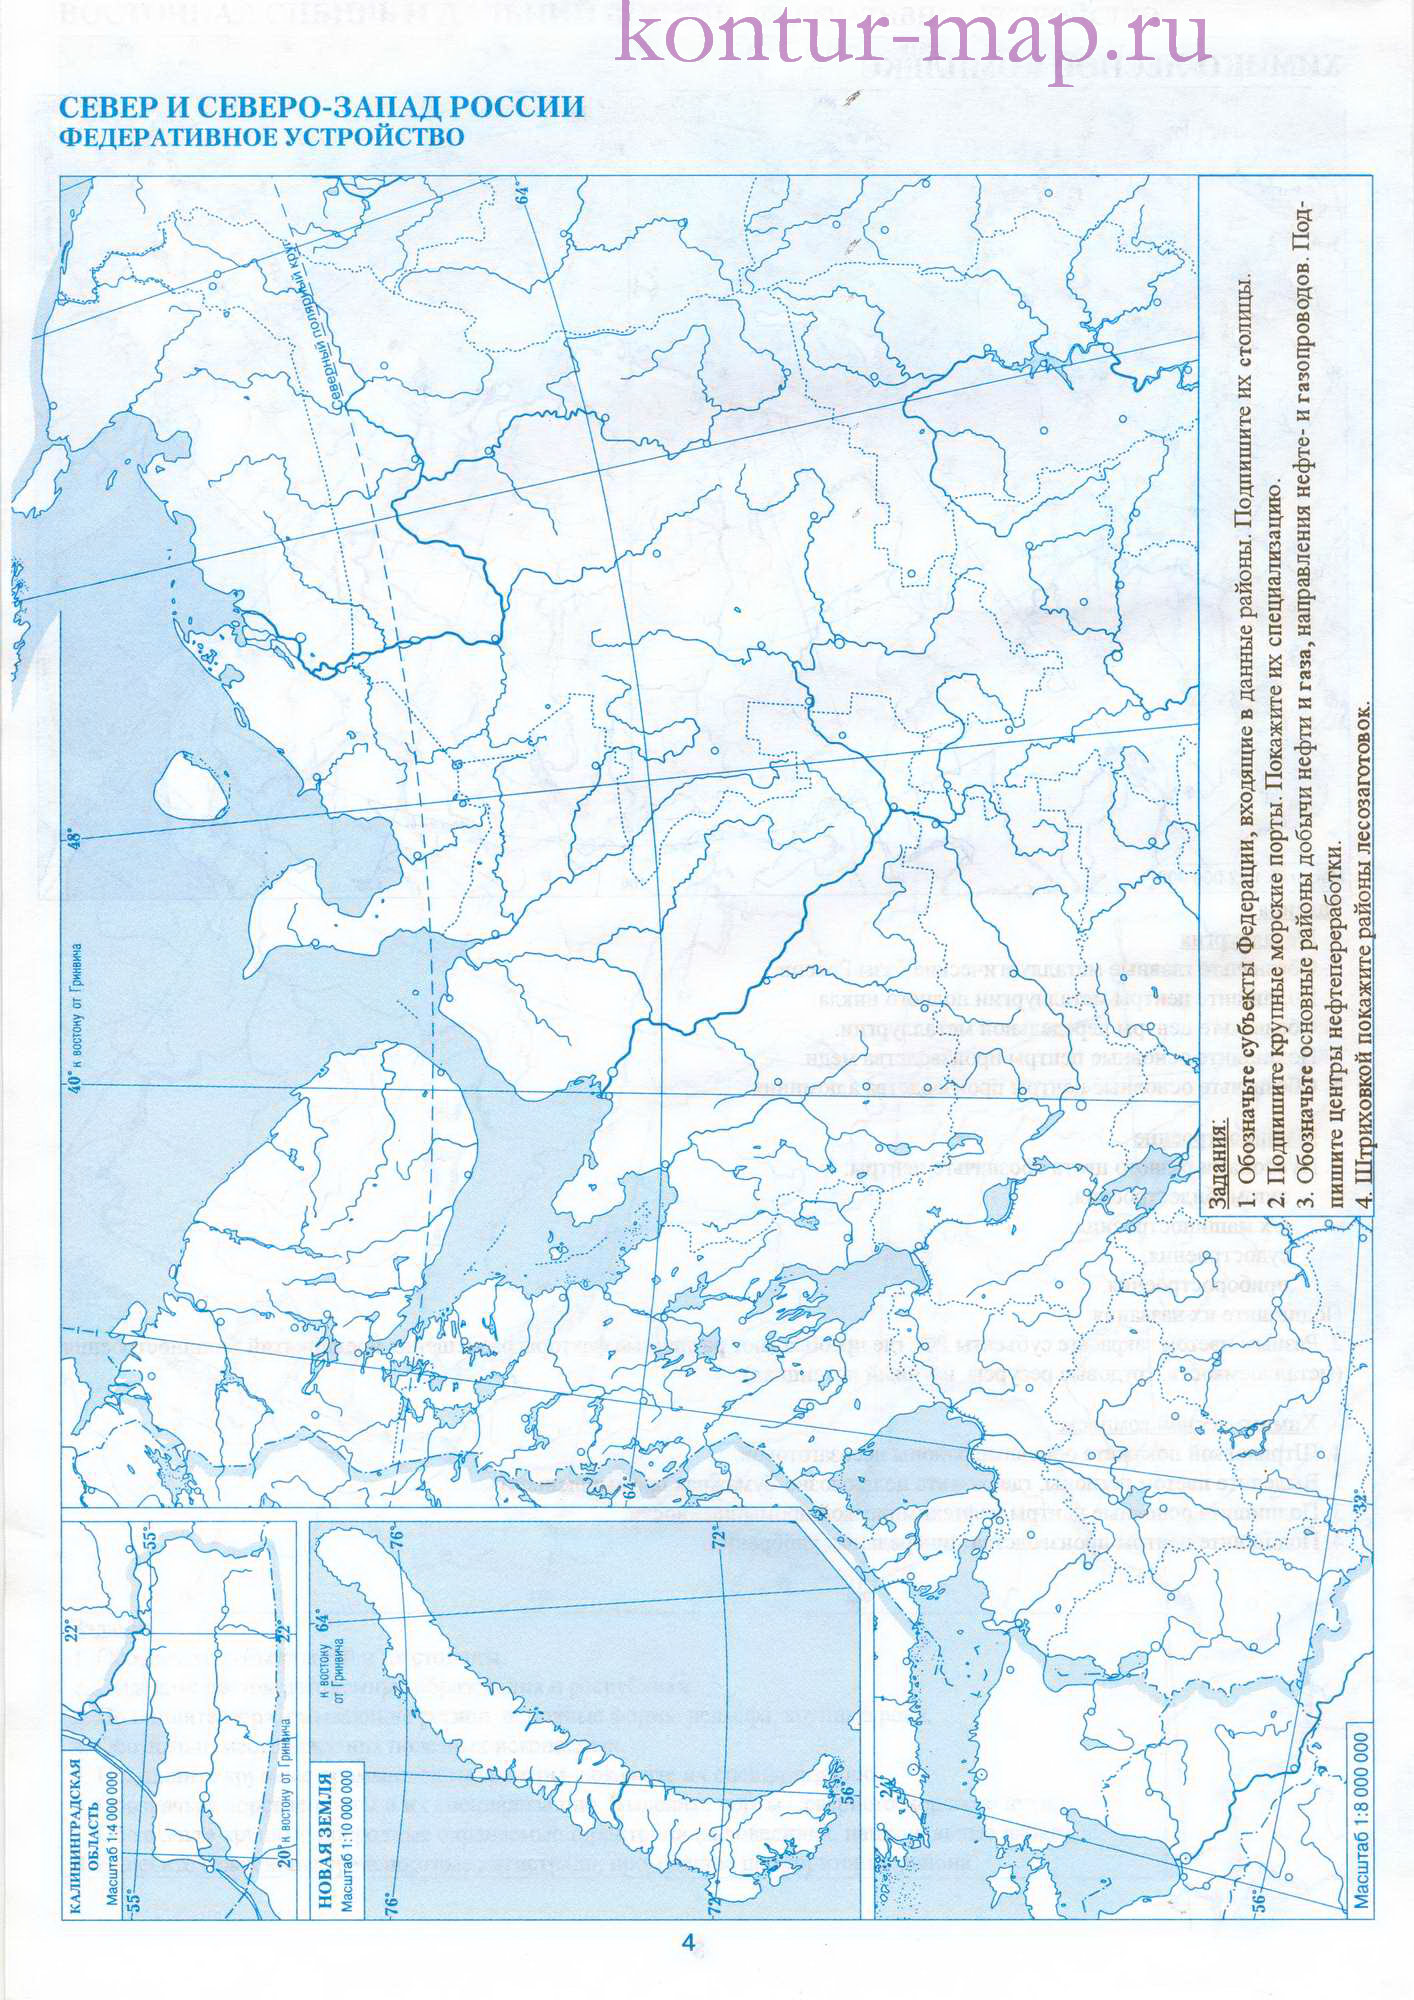 Контурная карта Северо-Западного региона России. Федеративное устройствоРоссии на контурной карте: север и северо-запад,